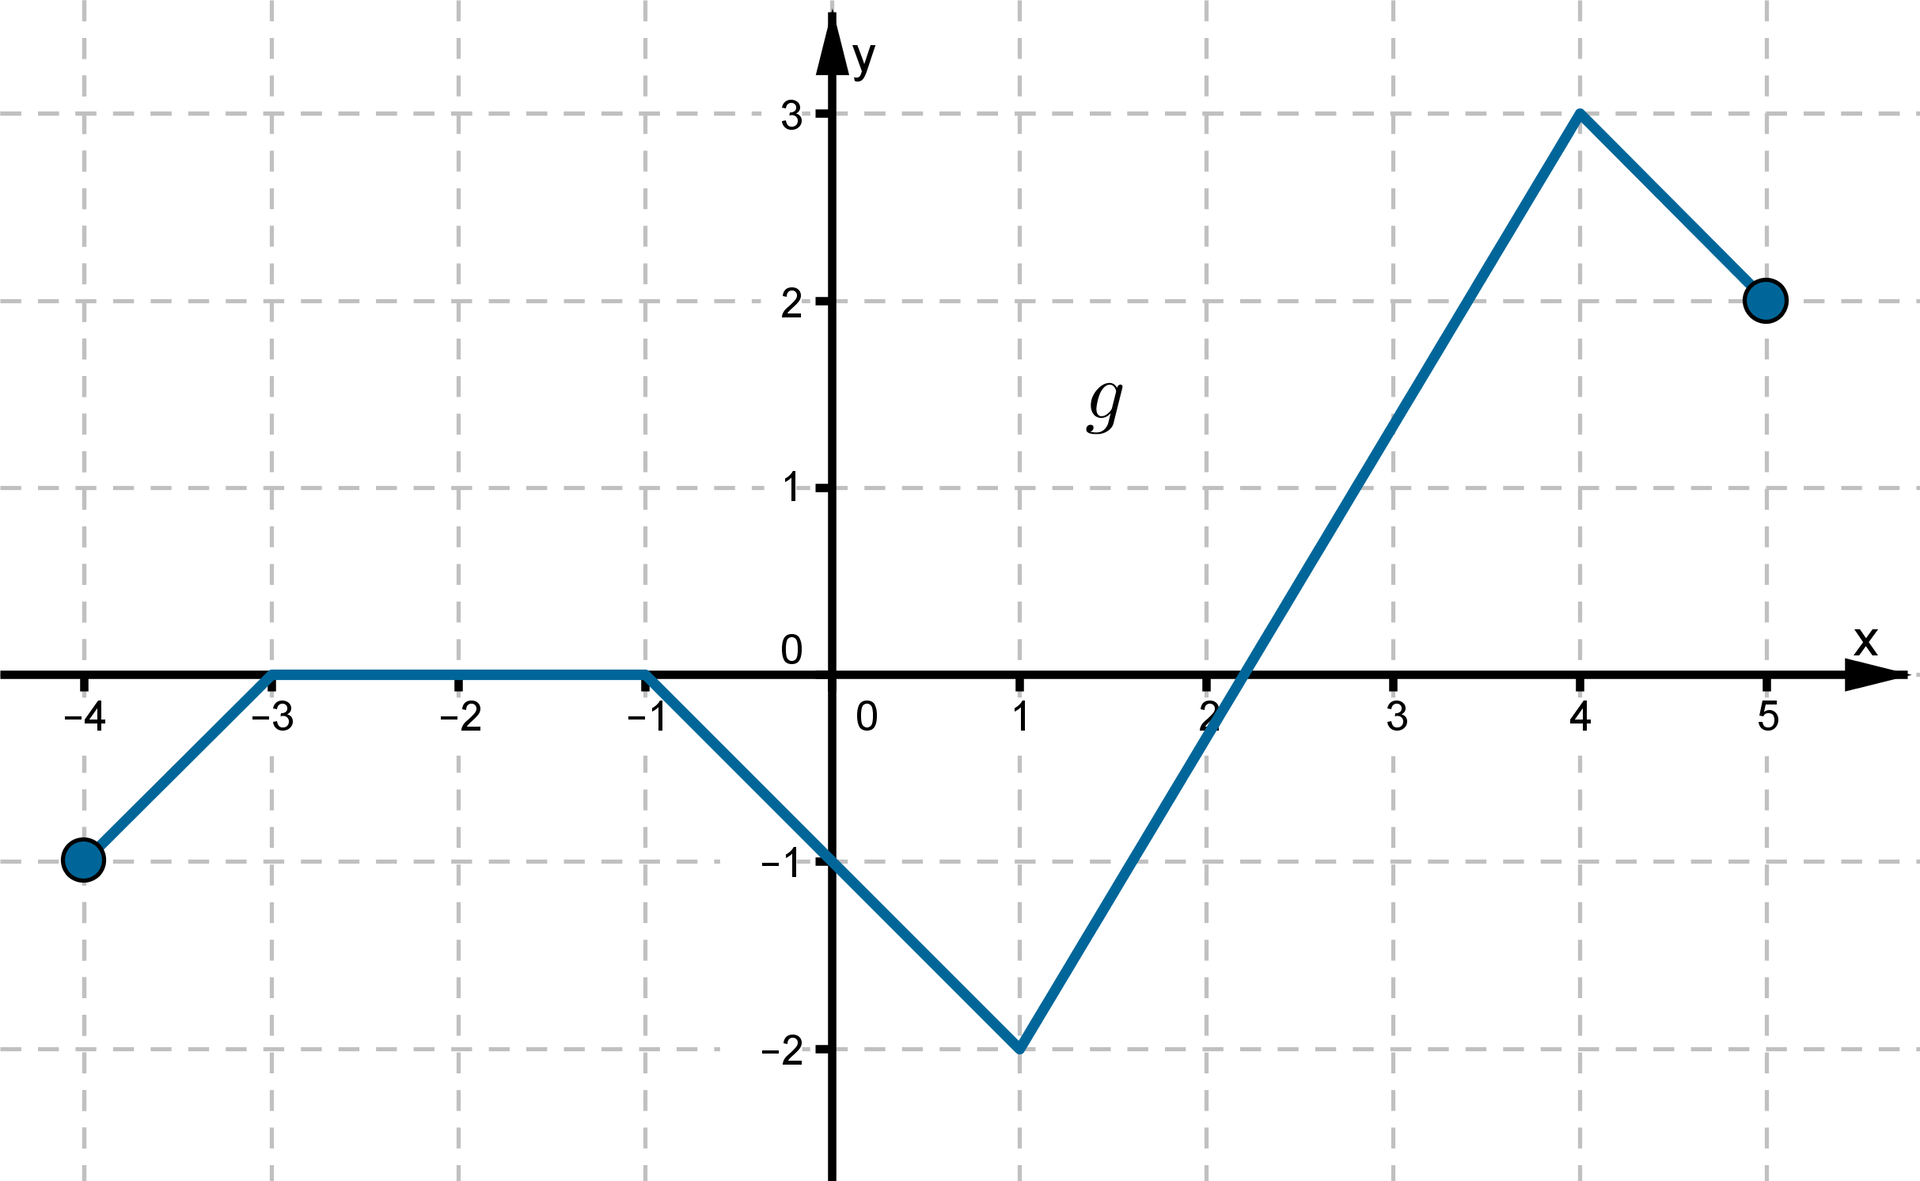 Wykres funkcji g w postaci łamanej złożonej z pięciu odcinków leżącej w pierwszej, trzeciej i czwartej ćwiartce układu współrzędnych oraz w przedziale obustronnie domkniętym od -3 do -1 na osi OX.